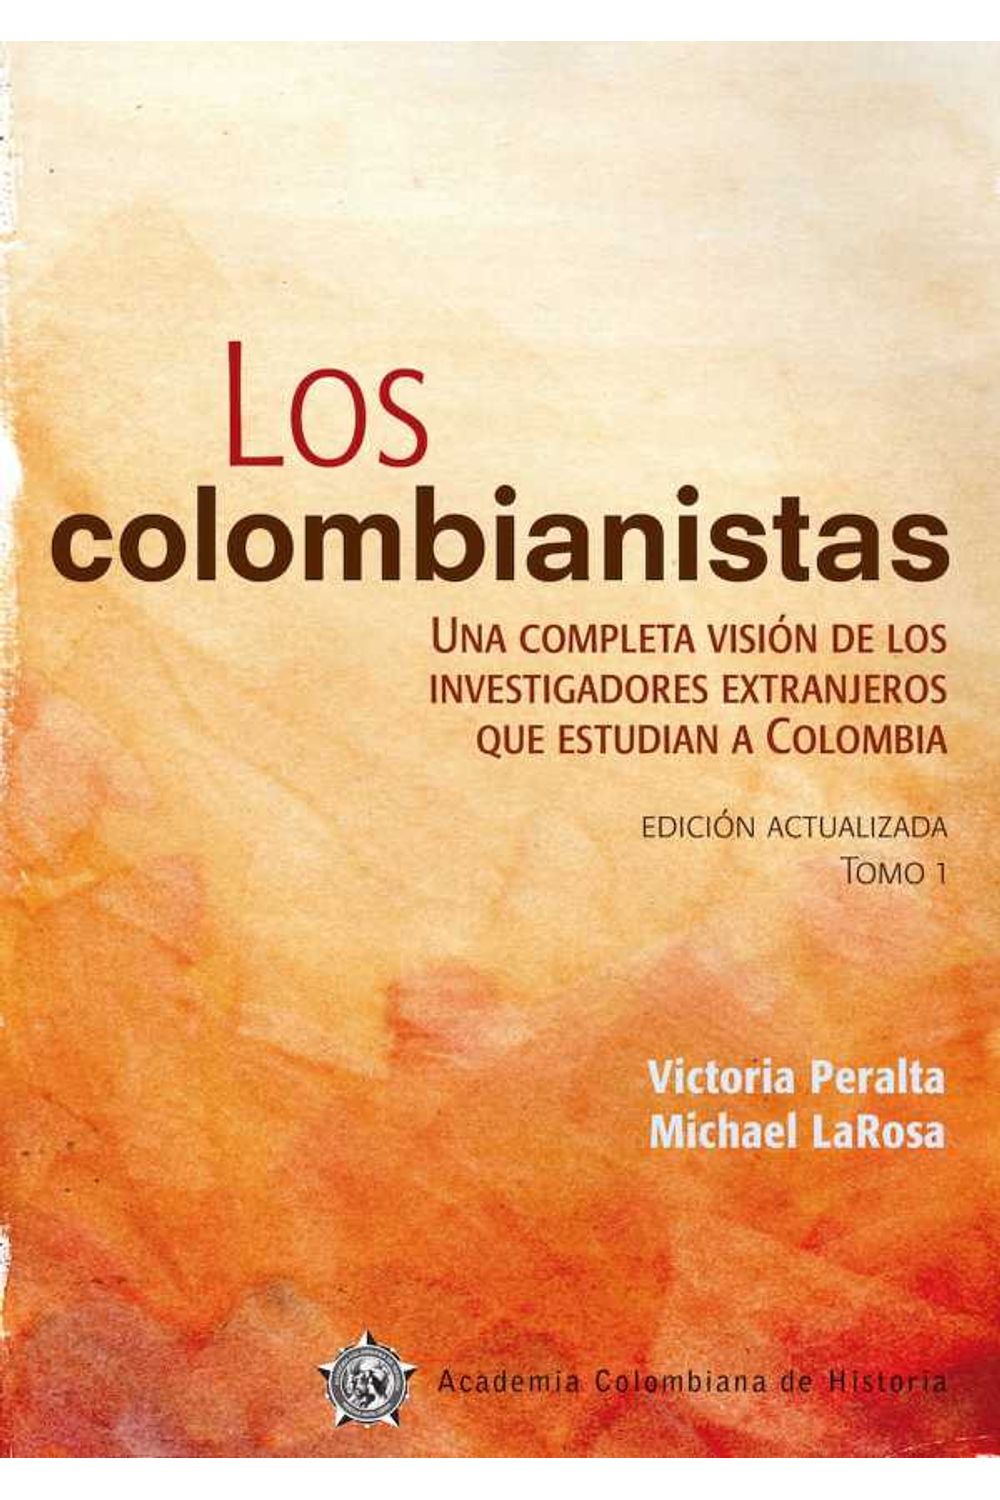 bw-los-colombianistas-academia-colombiana-de-historia-9789585154384